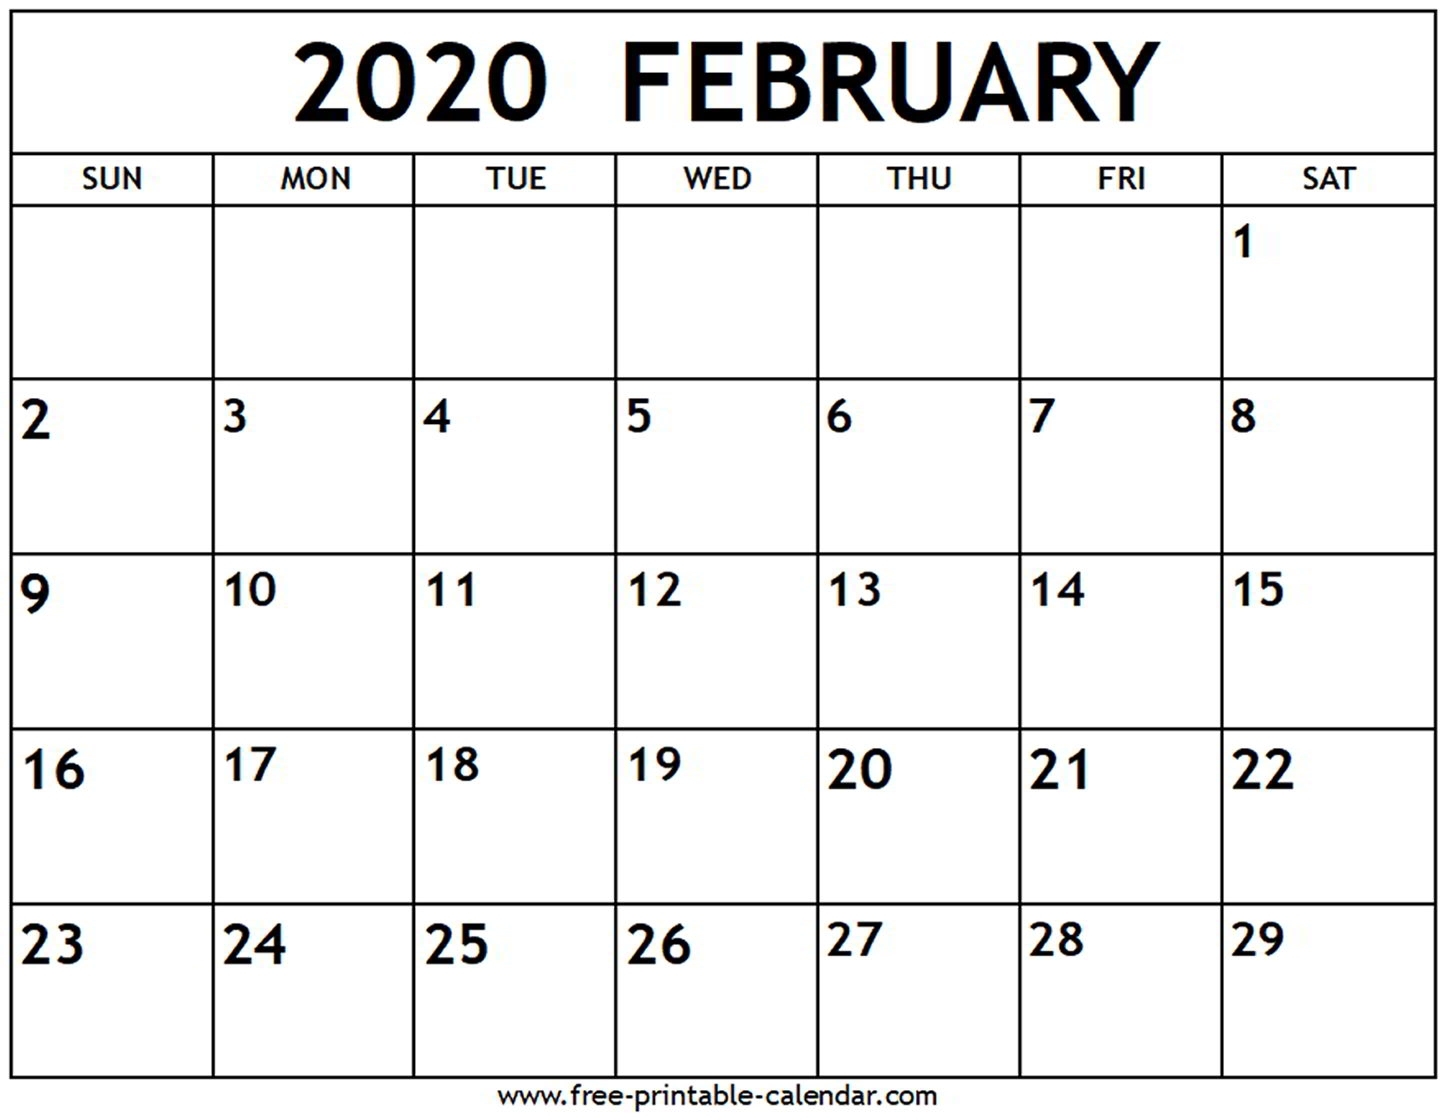 February 2020 Calendar - Free-Printable-Calendar